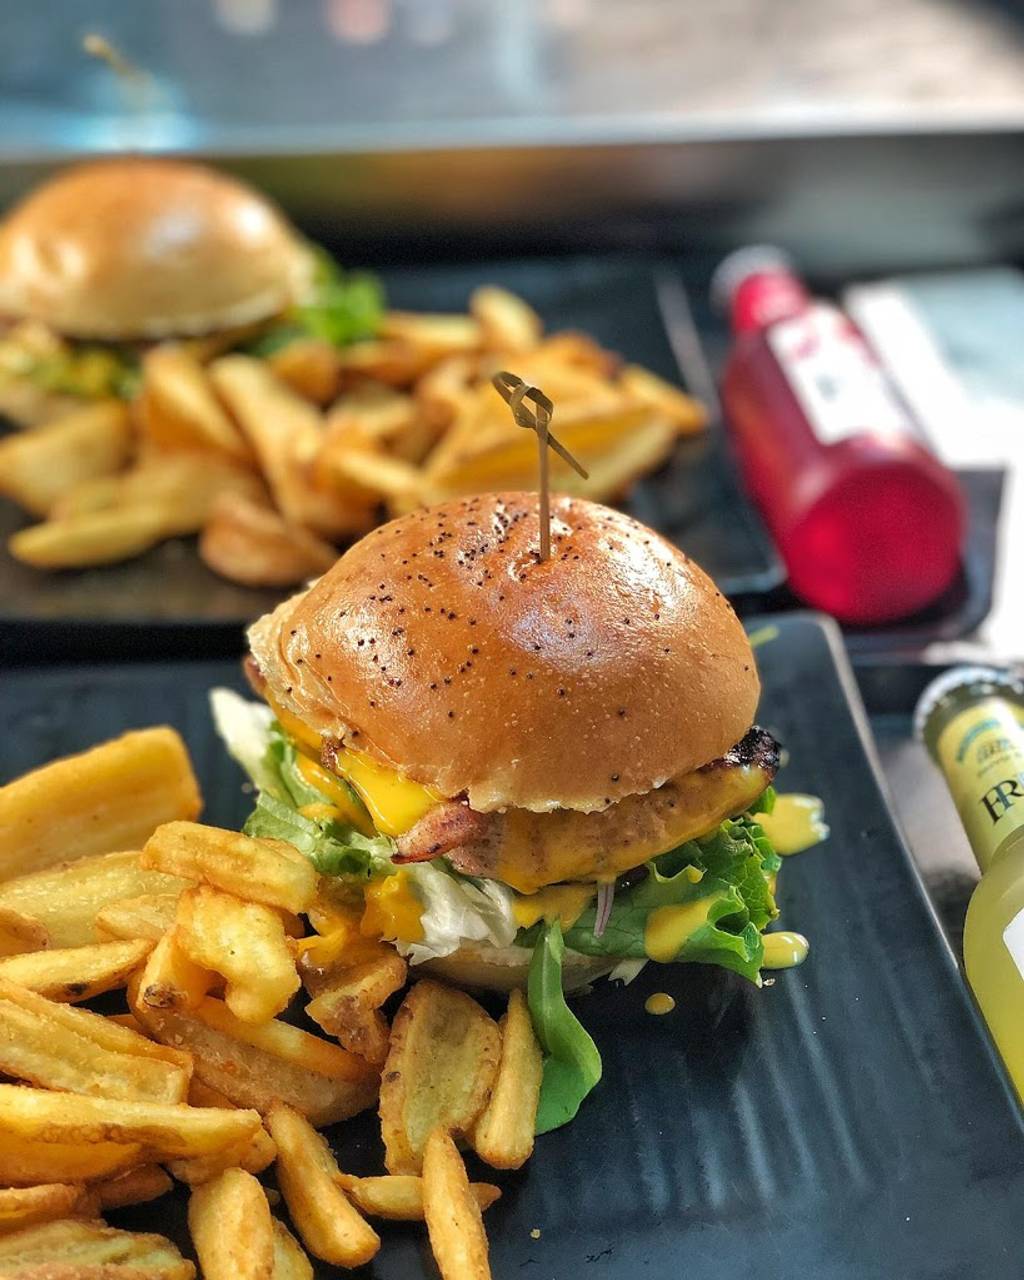 DRIMA GRILL Burger Pierrefitte-sur-Seine - Dish Food Junk food Fast food Hamburger